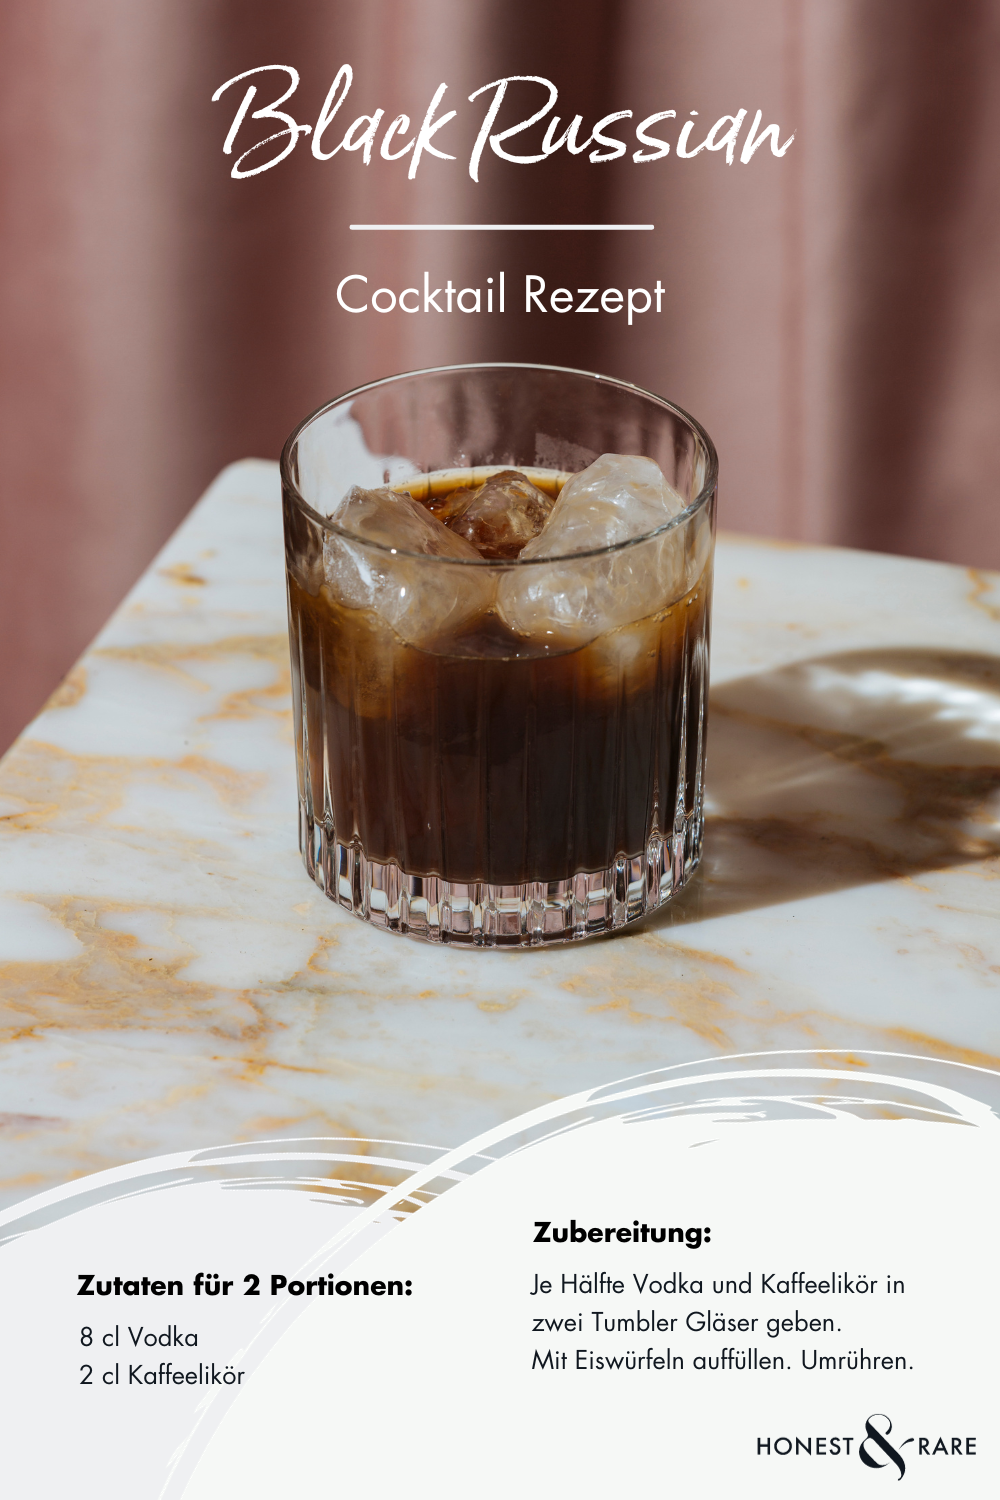 Black Russian Cocktail Rezept